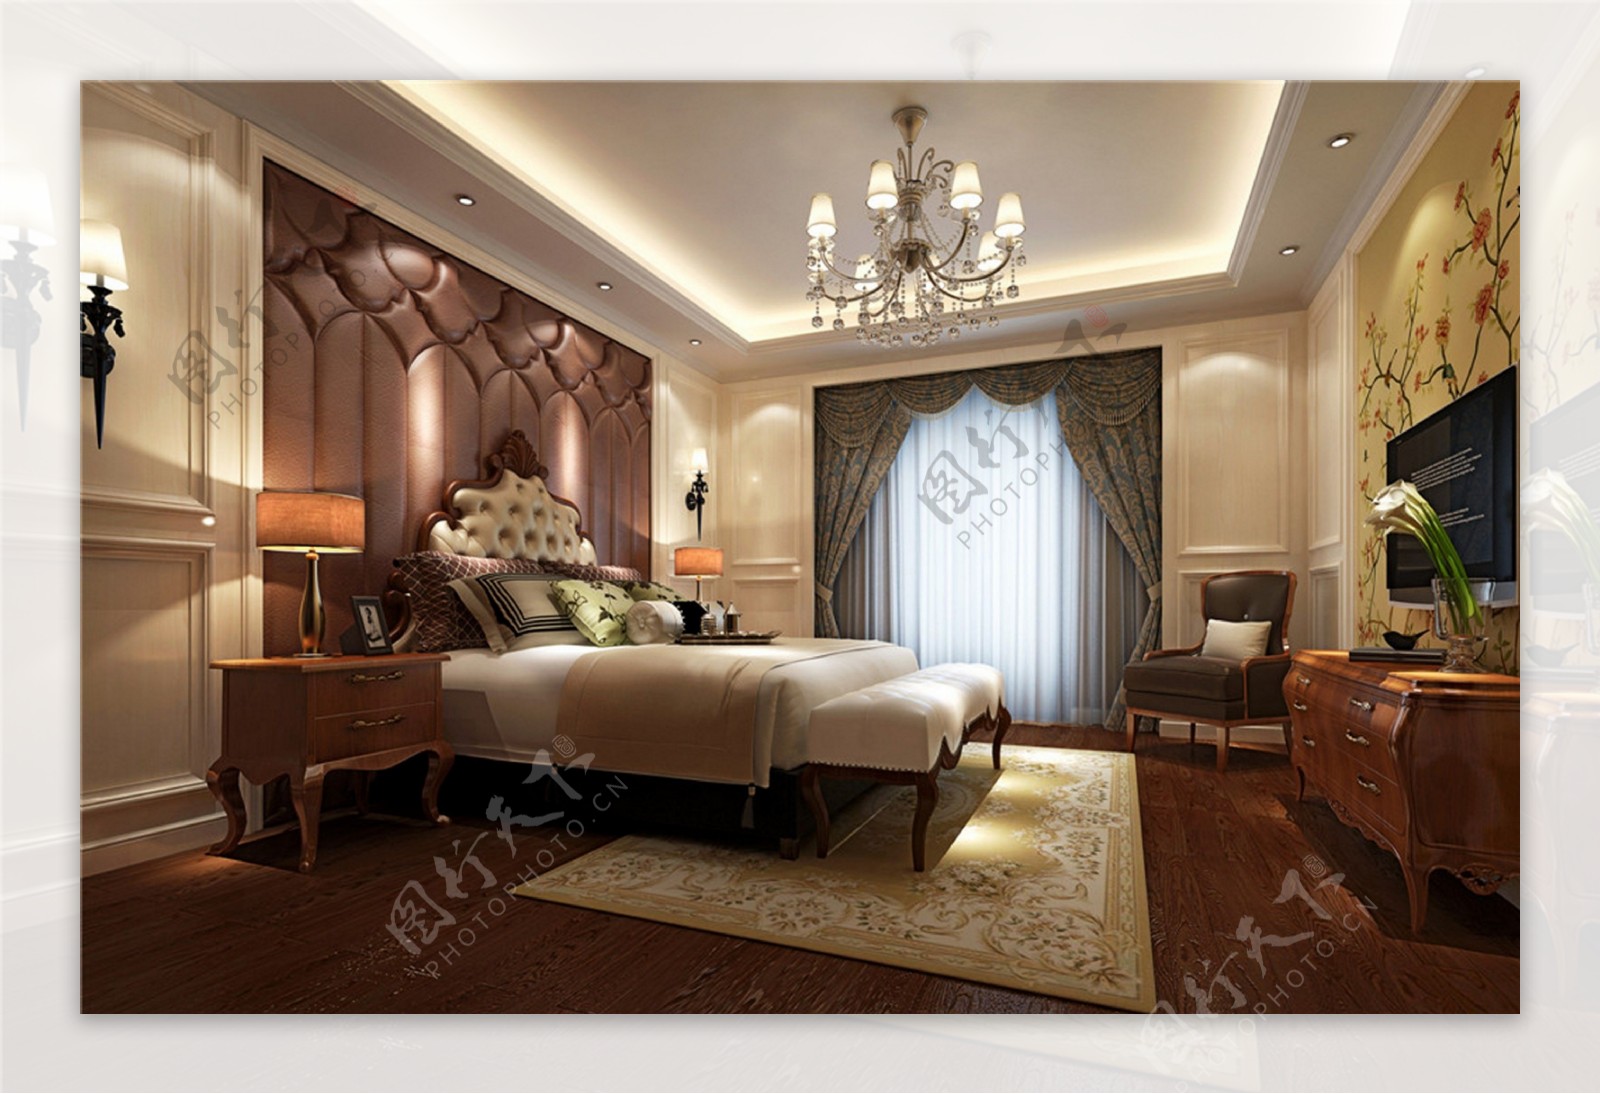 欧式时尚卧室大床背景墙设计图